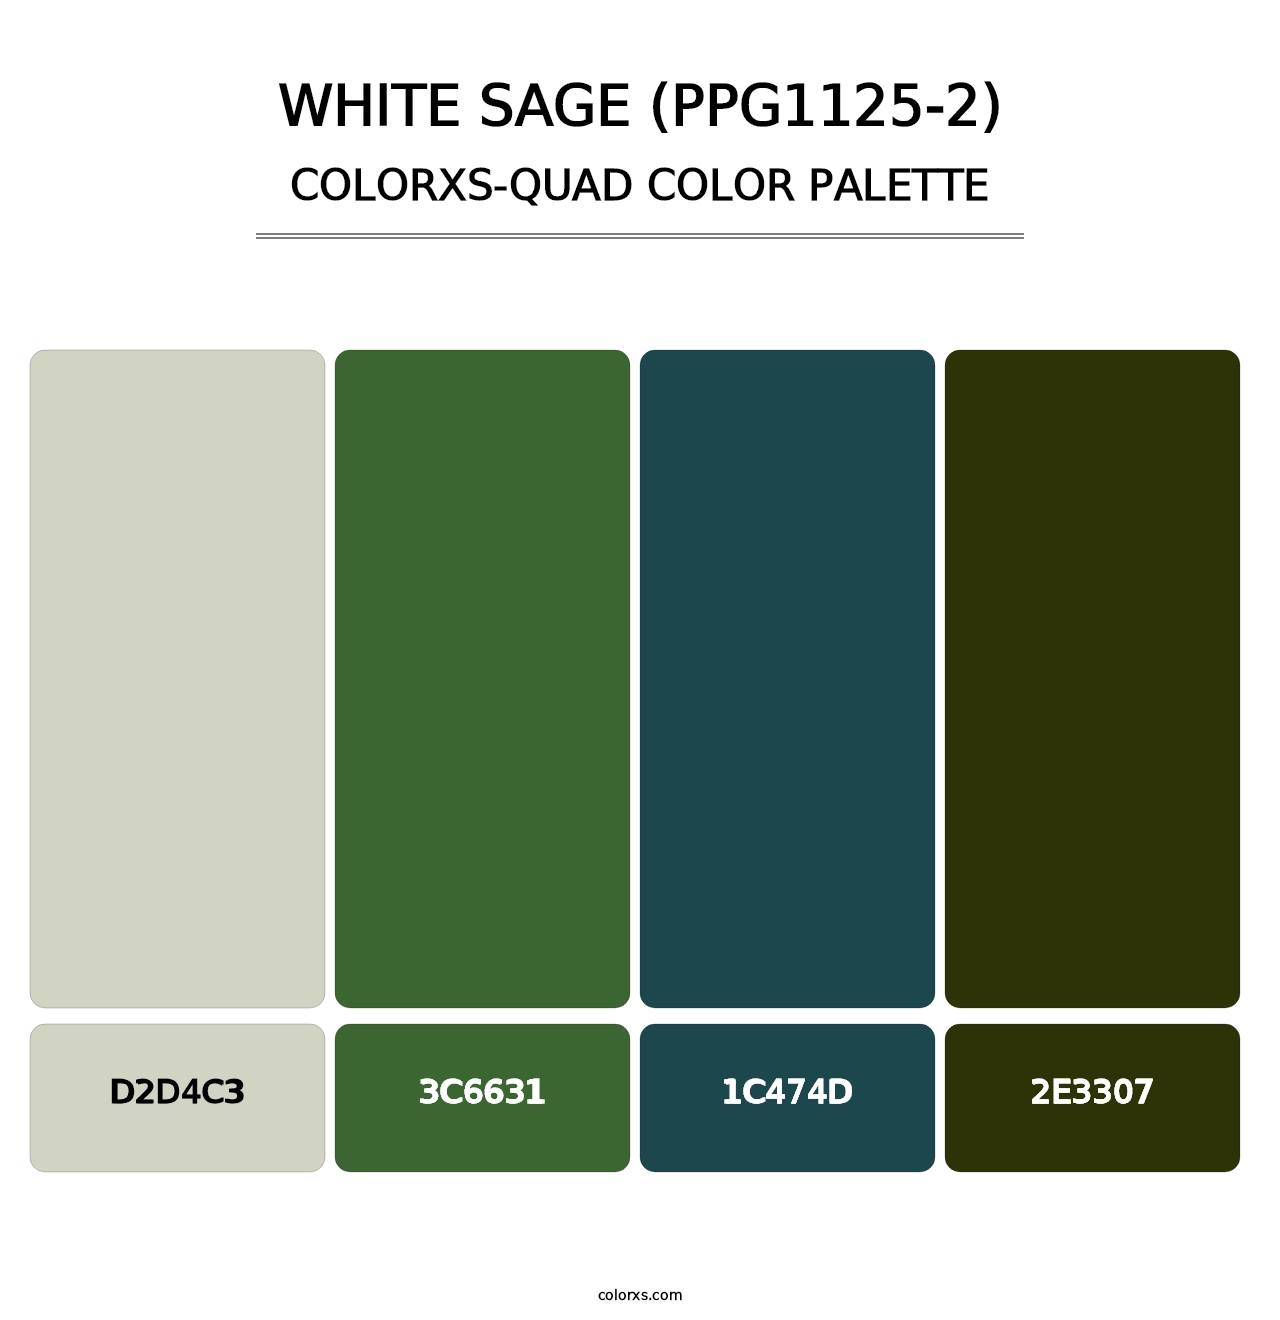 White Sage (PPG1125-2) - Colorxs Quad Palette